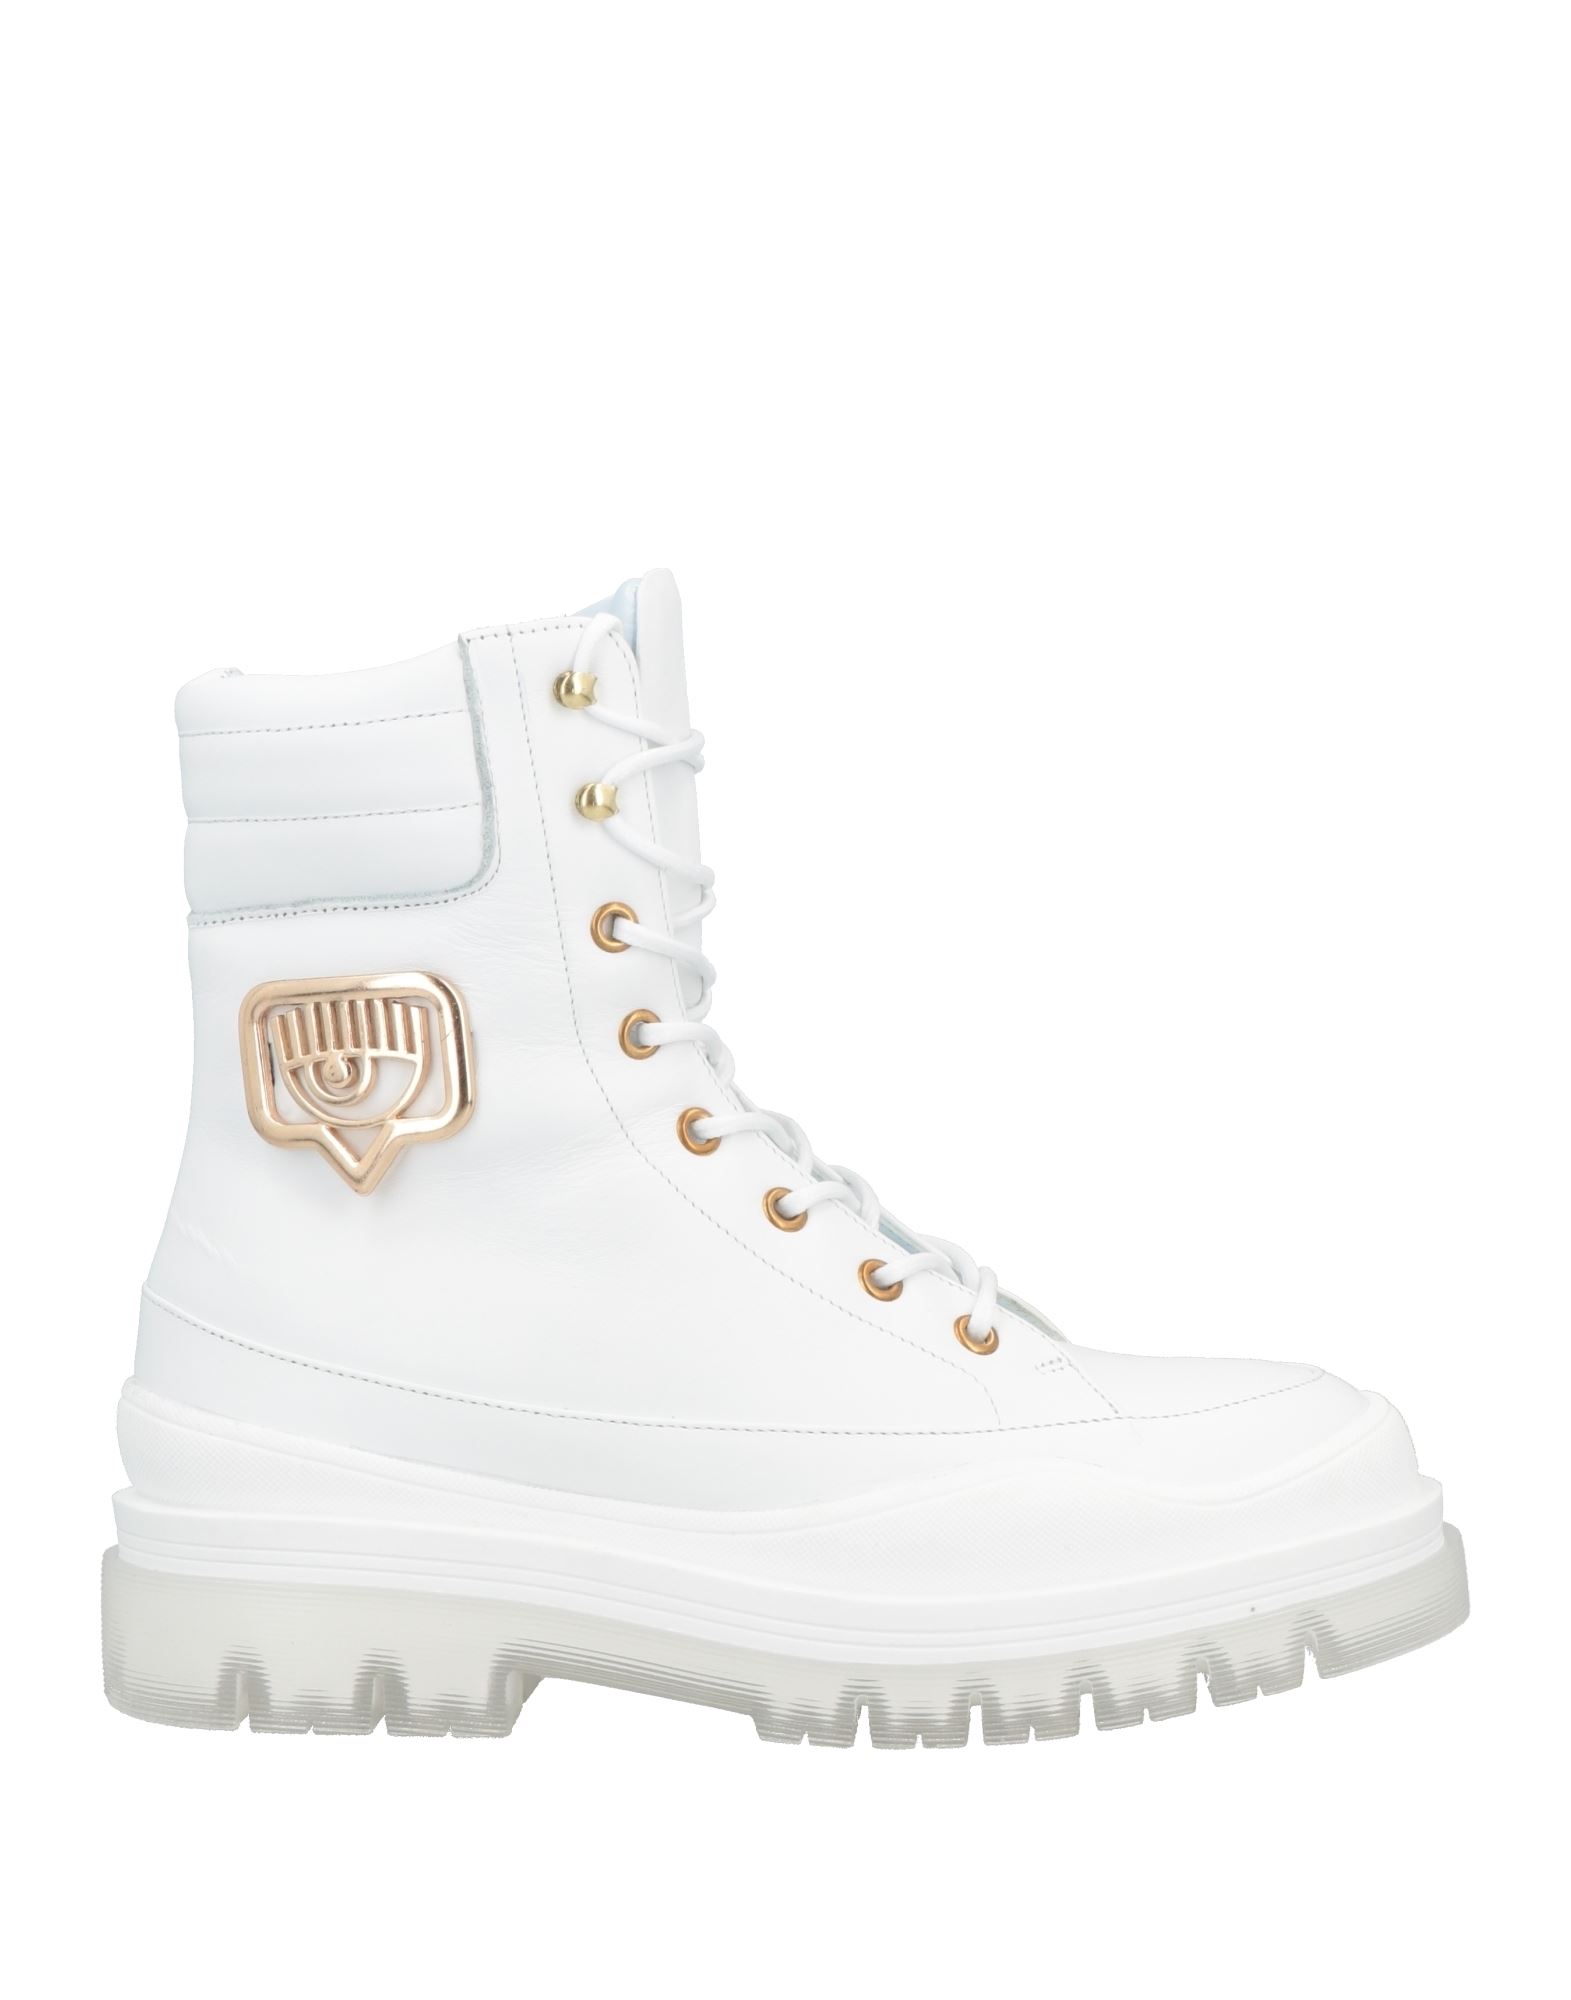 Shop Chiara Ferragni Woman Ankle Boots White Size 7 Calfskin